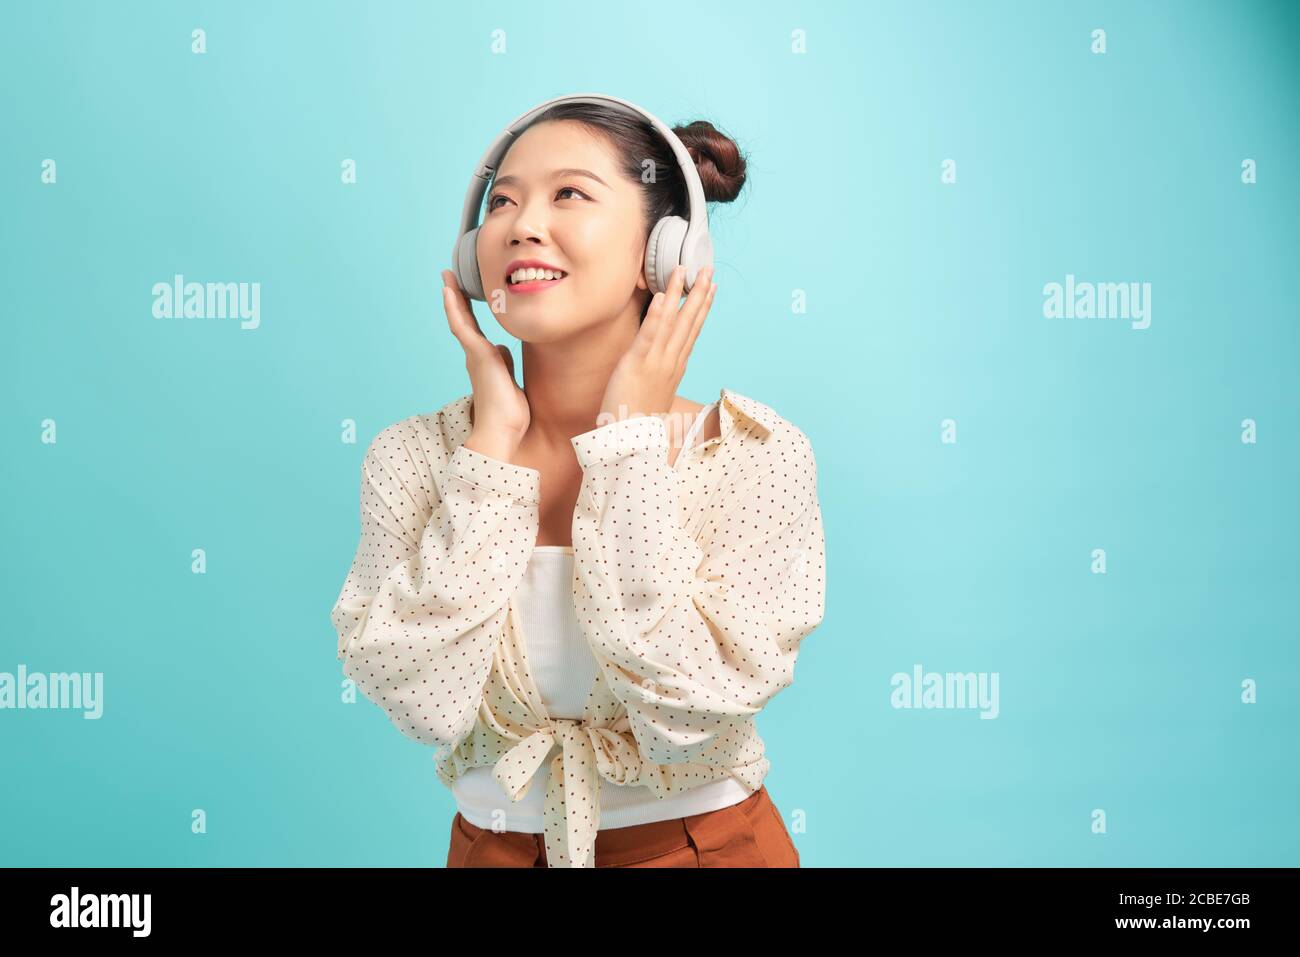 Frau mit Kopfhörern Musik hören . Musik Teenager Mädchen tanzen gegen blau. Hintergrund isoliert. Stockfoto